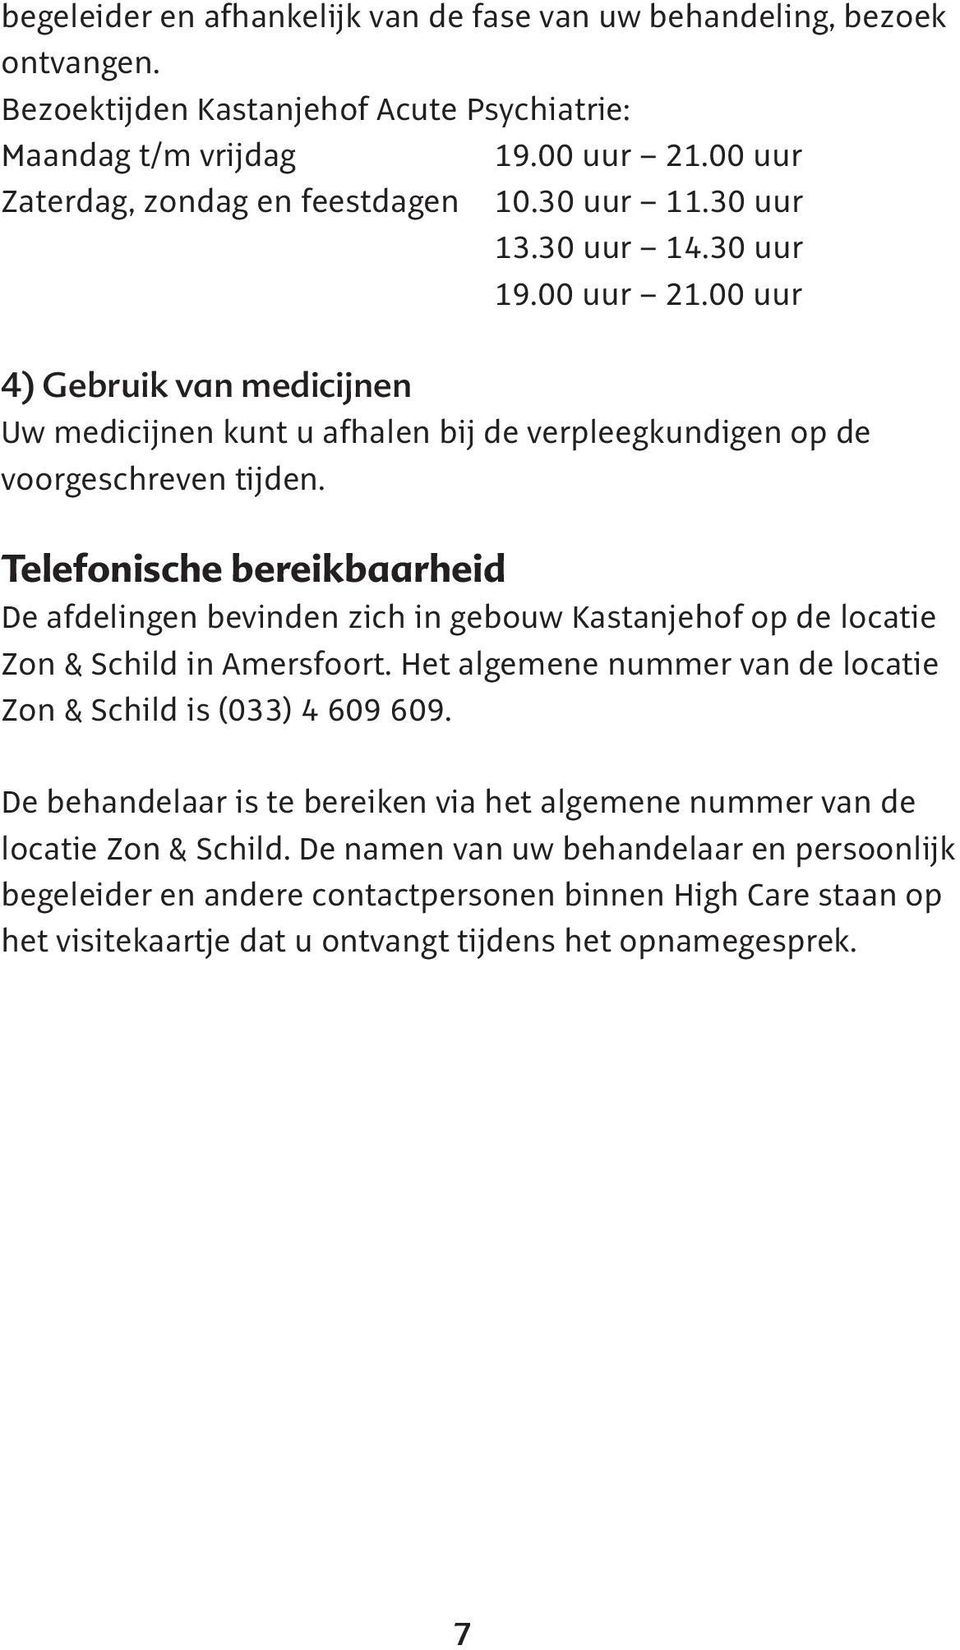 Telefonische bereikbaarheid De afdelingen bevinden zich in gebouw Kastanjehof op de locatie Zon & Schild in Amersfoort. Het algemene nummer van de locatie Zon & Schild is (033) 4 609 609.